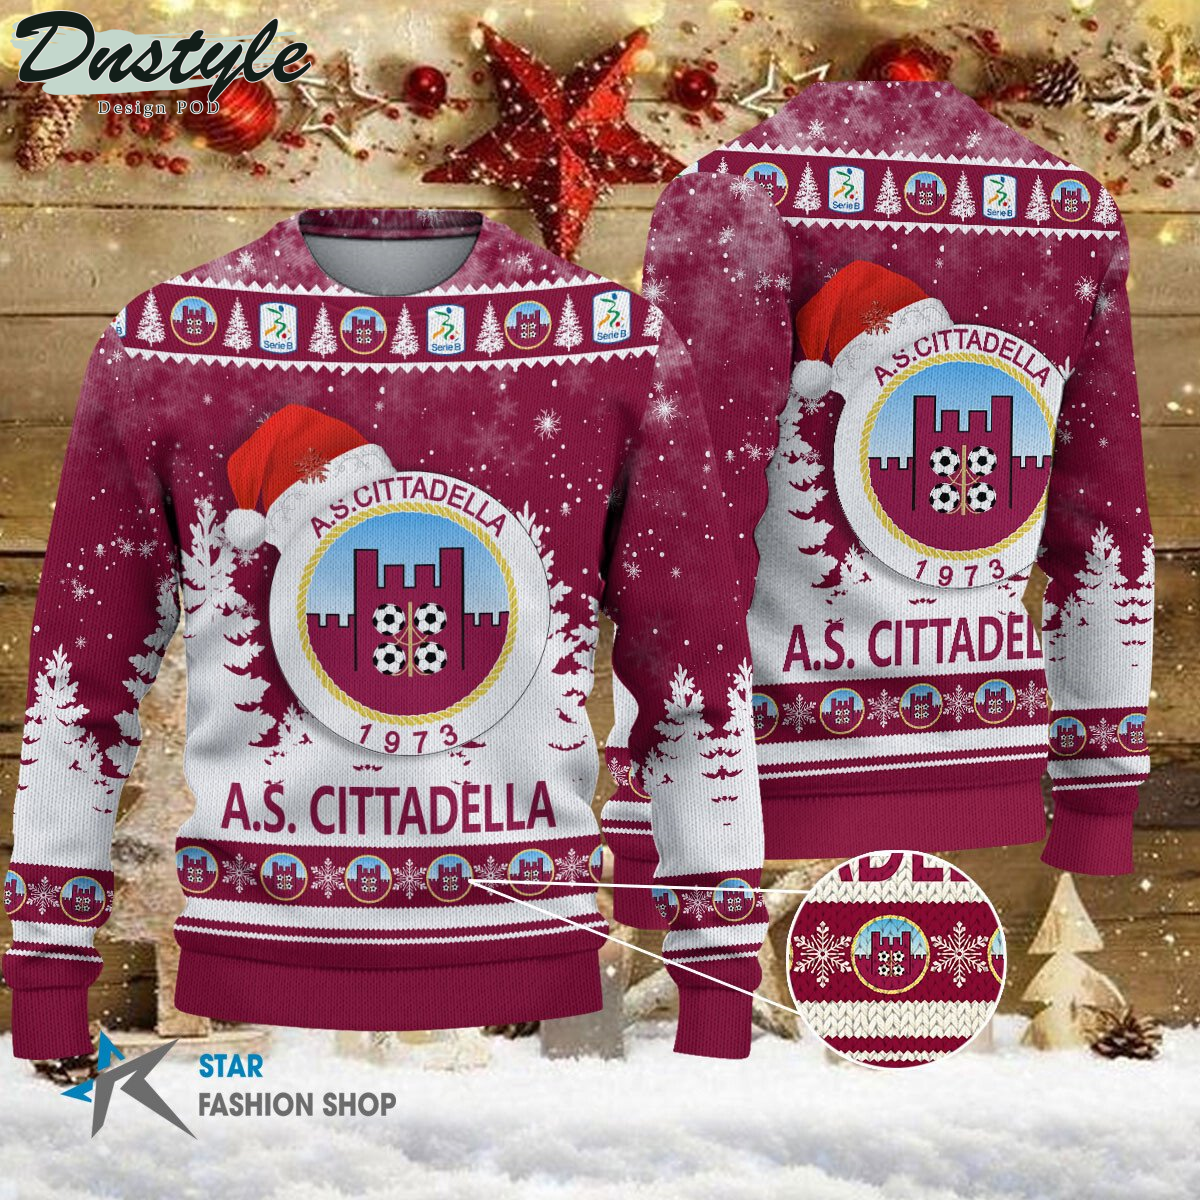 AC Milan brutto maglione natalizio